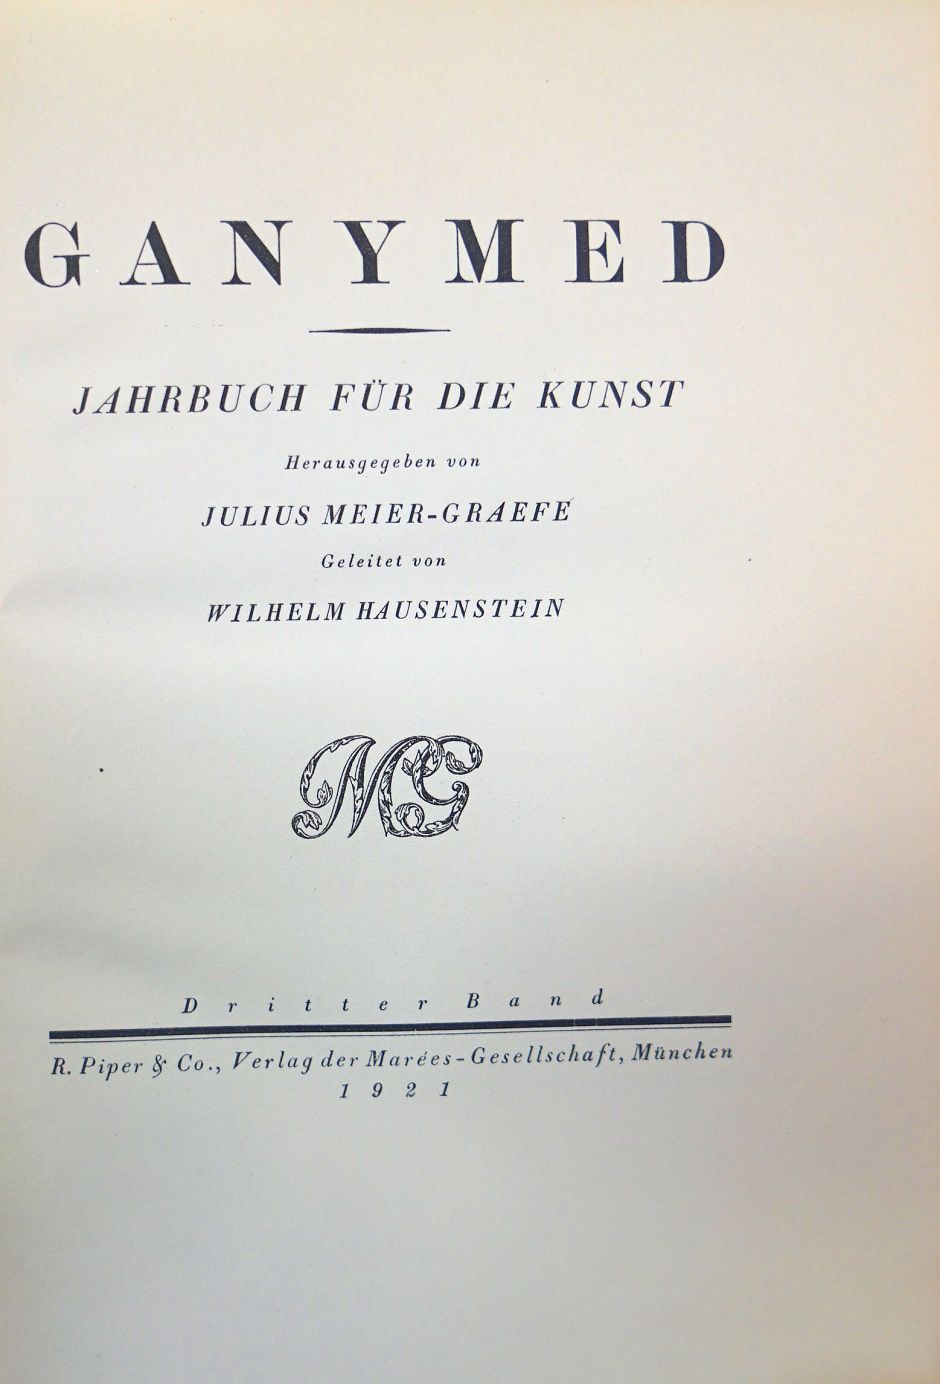 Lot 3112, Auction  115, Ganymed, Jahrbuch für die Kunst